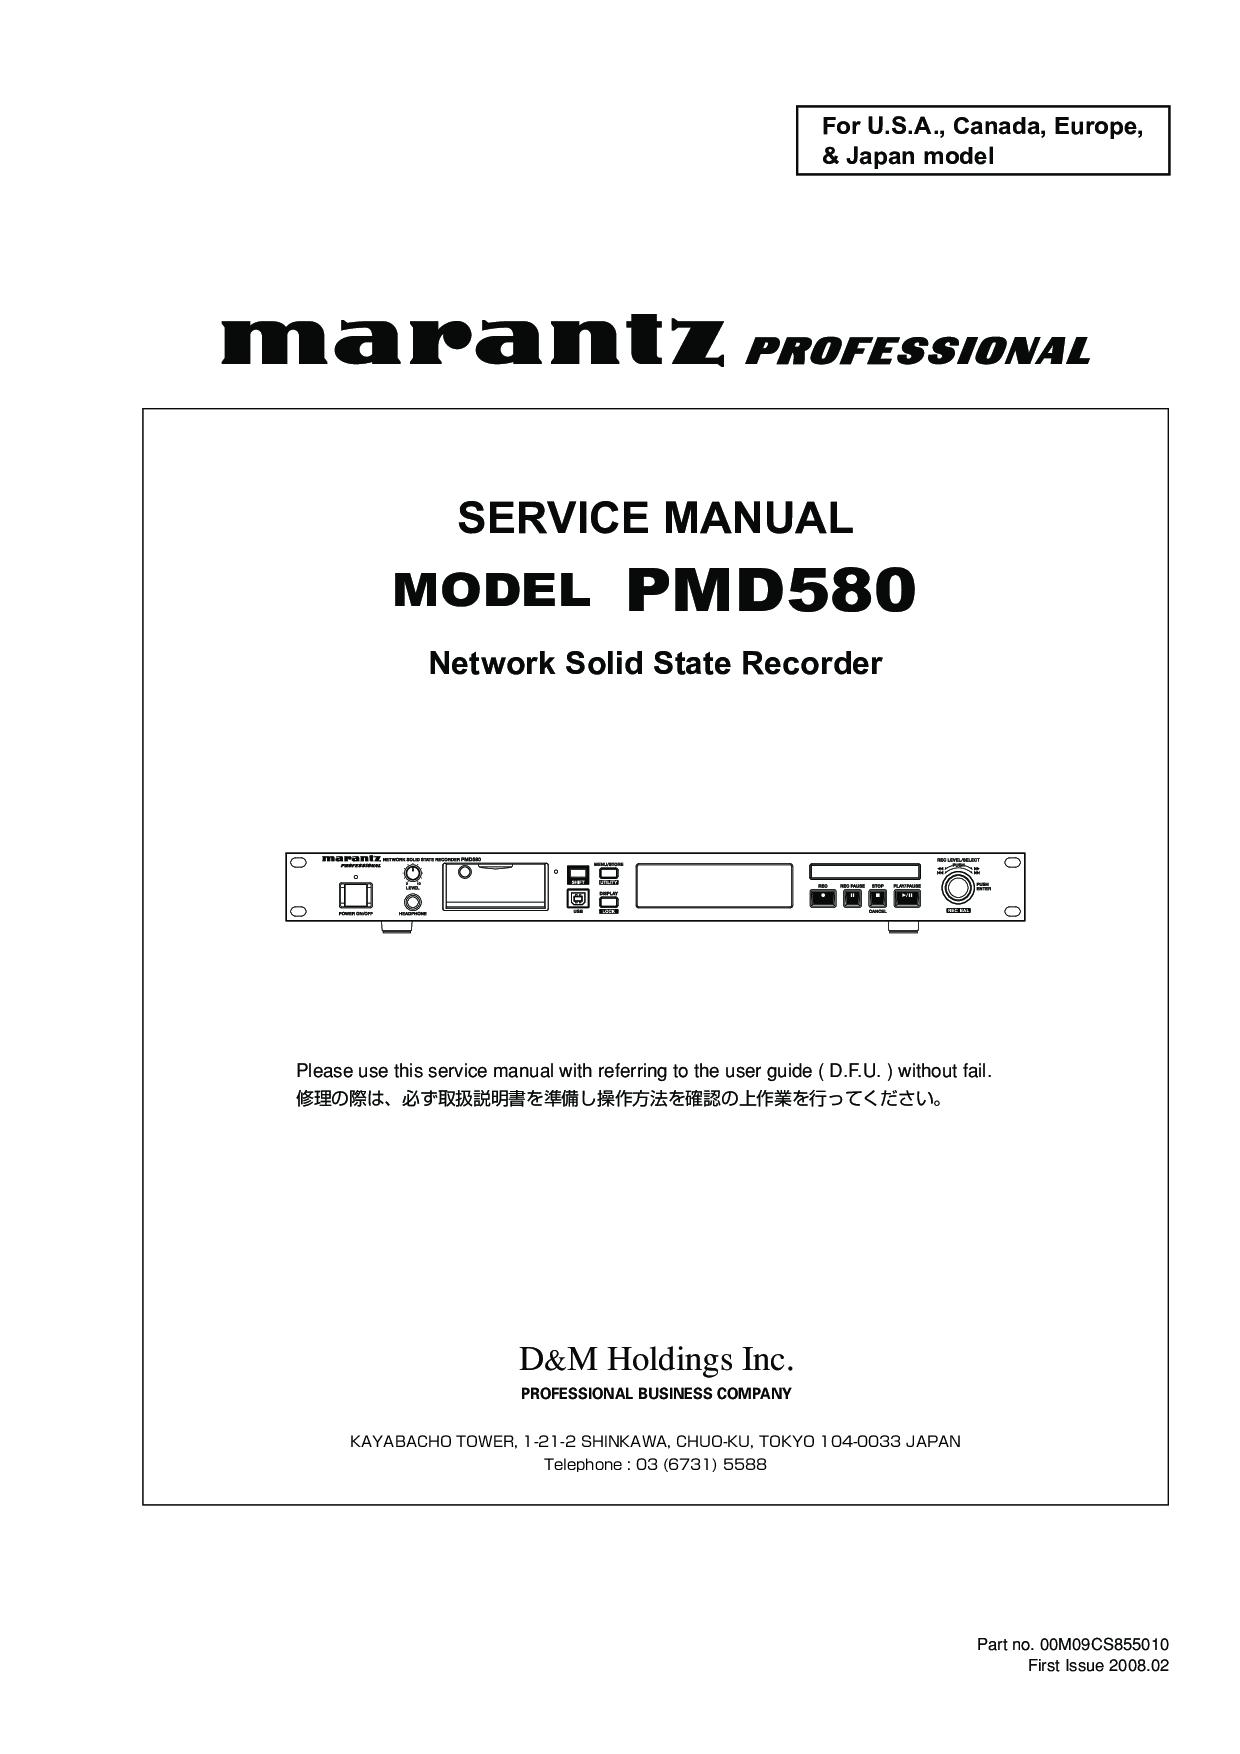 Denon PMD580 Service Manual